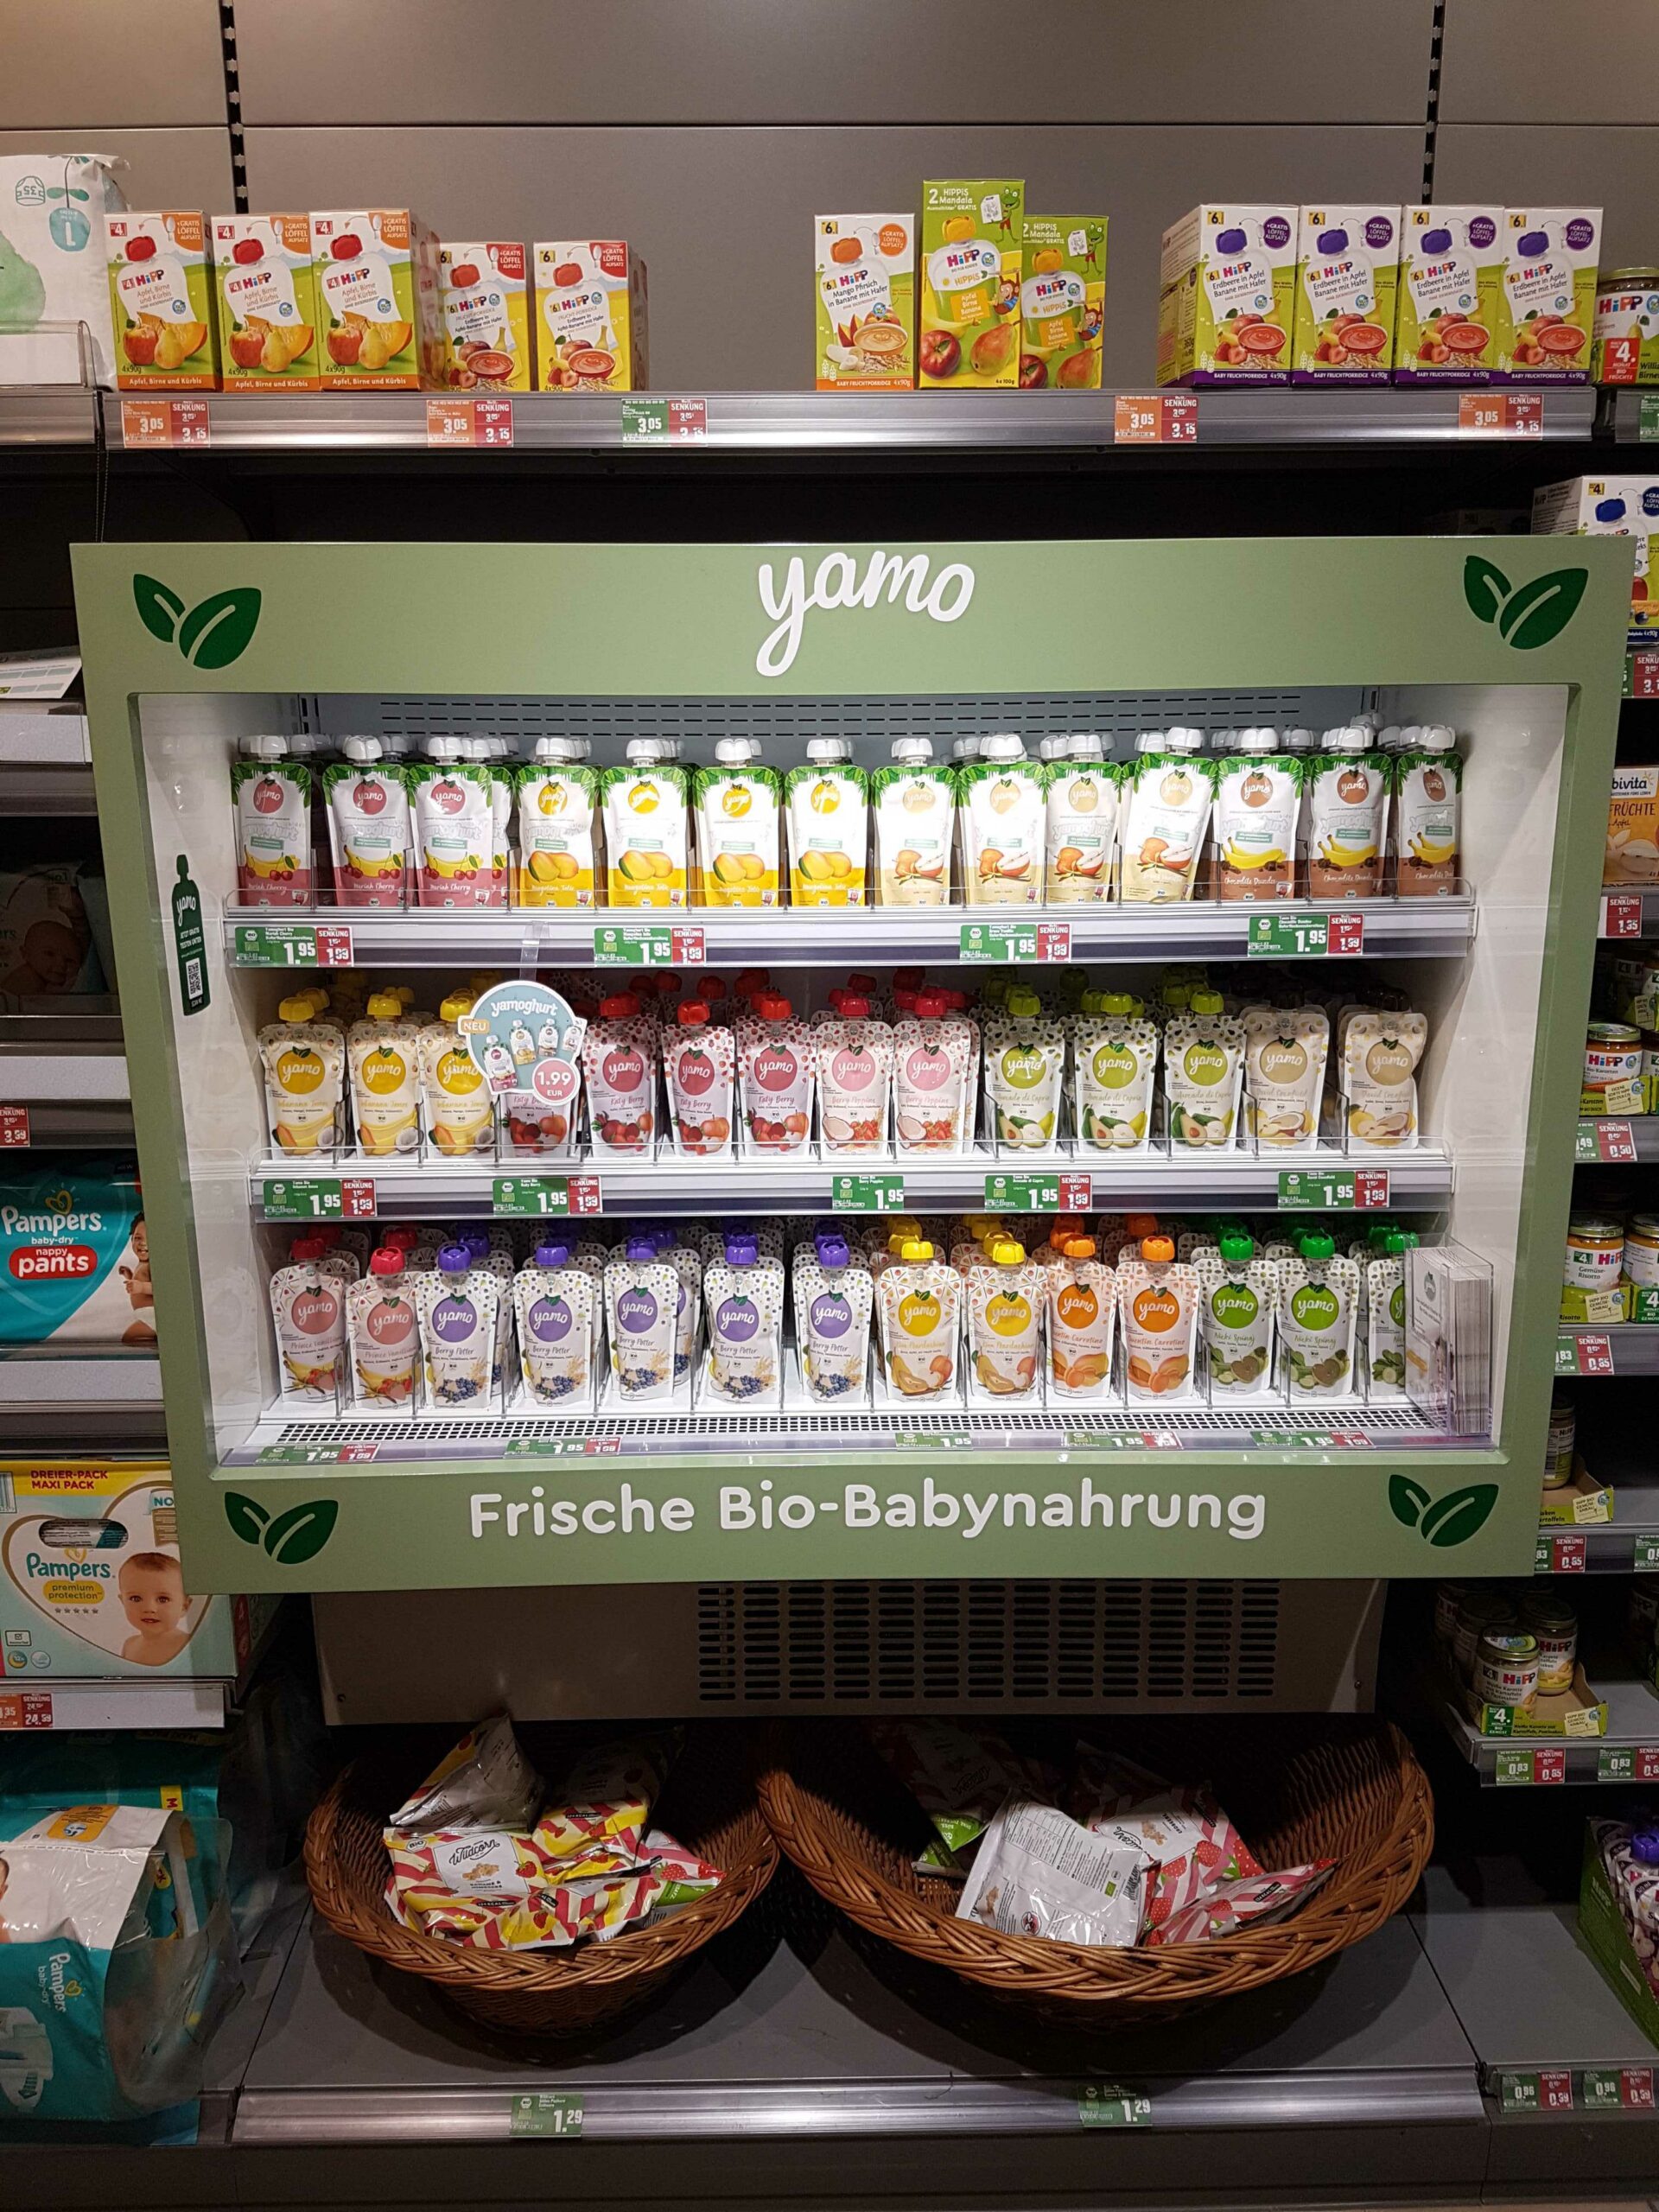 Yamo-Produkte in einer Auslage in einem Supermarkt